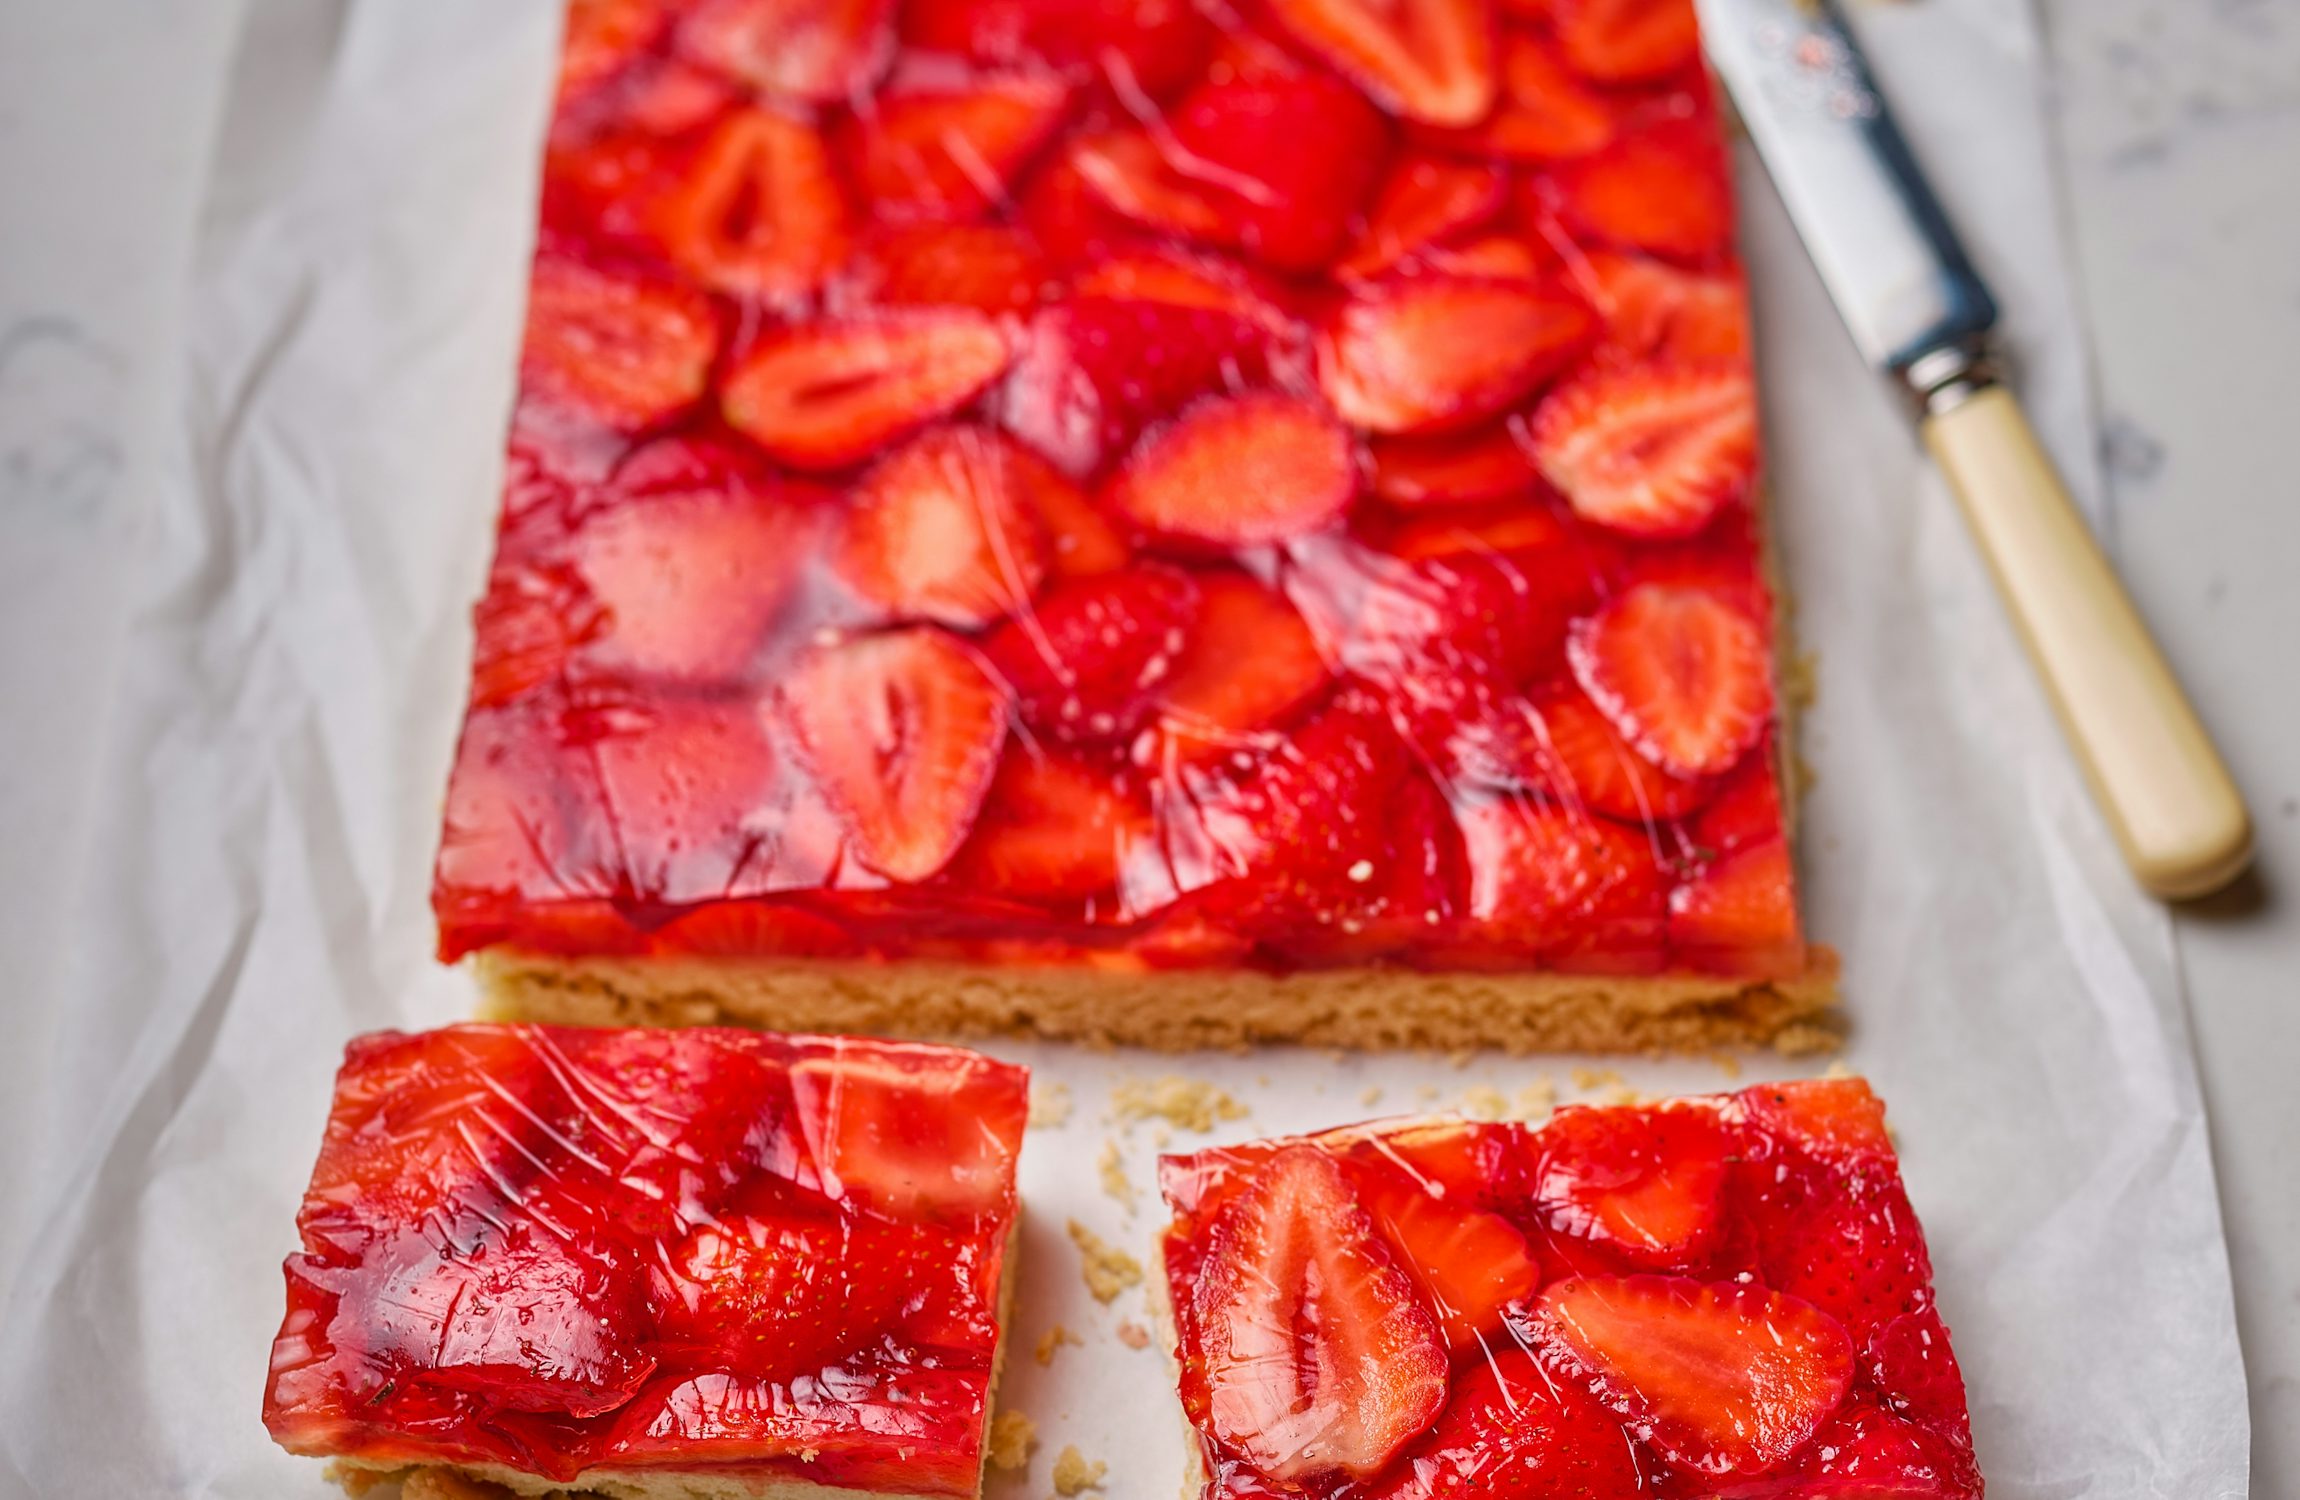 Strawberry Shortcake Jelly Pie